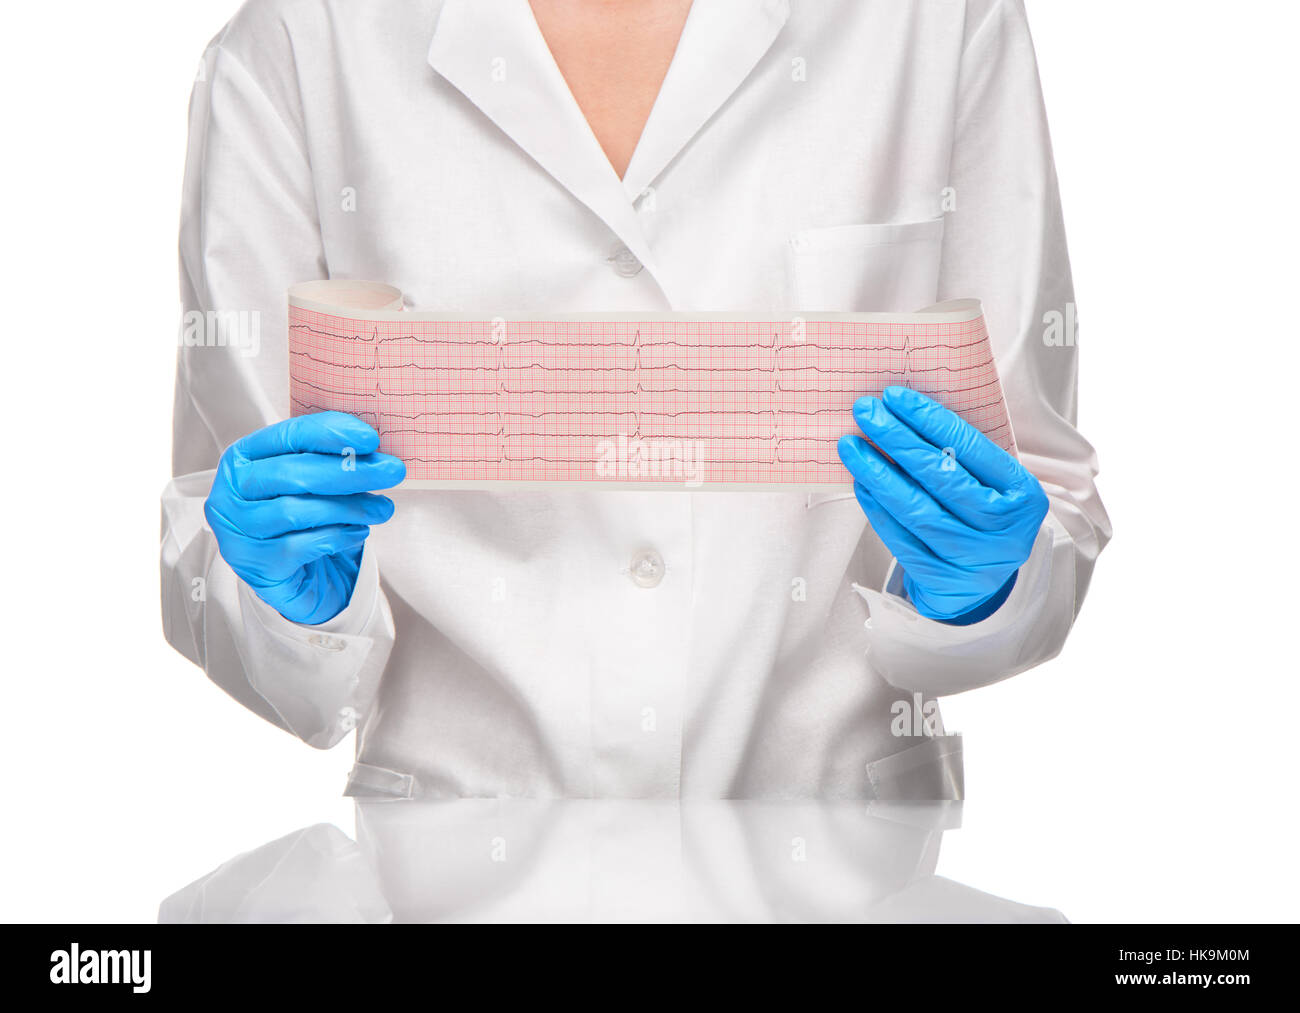 Doctora en vestido blanco y azul guantes manteniendo resultados de ECG en papel contra el fondo blanco. Foto de stock